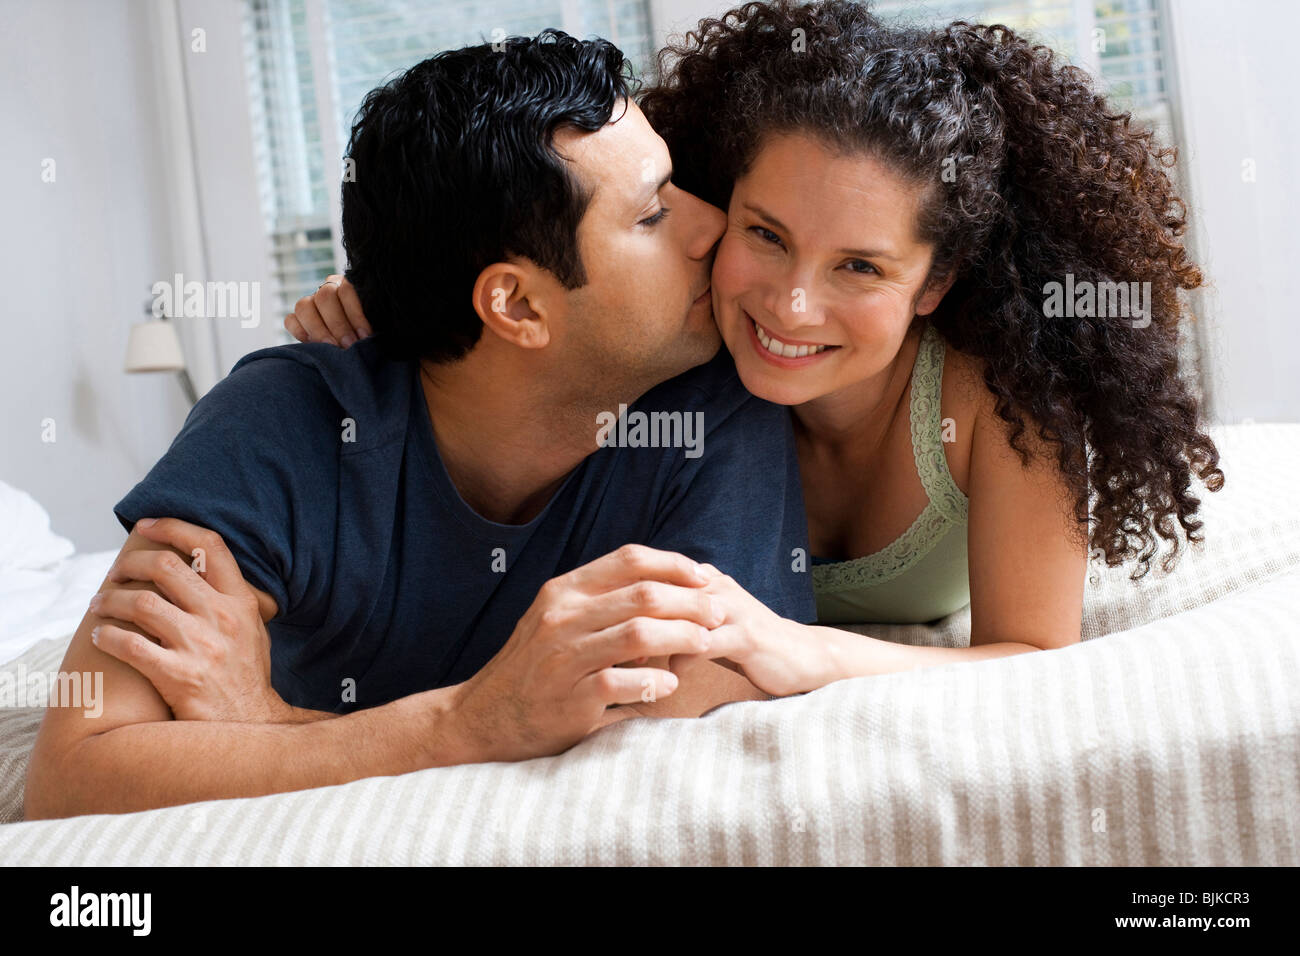 Mann Und Frau Im Bett Zu Kuscheln Stockfotografie Alamy